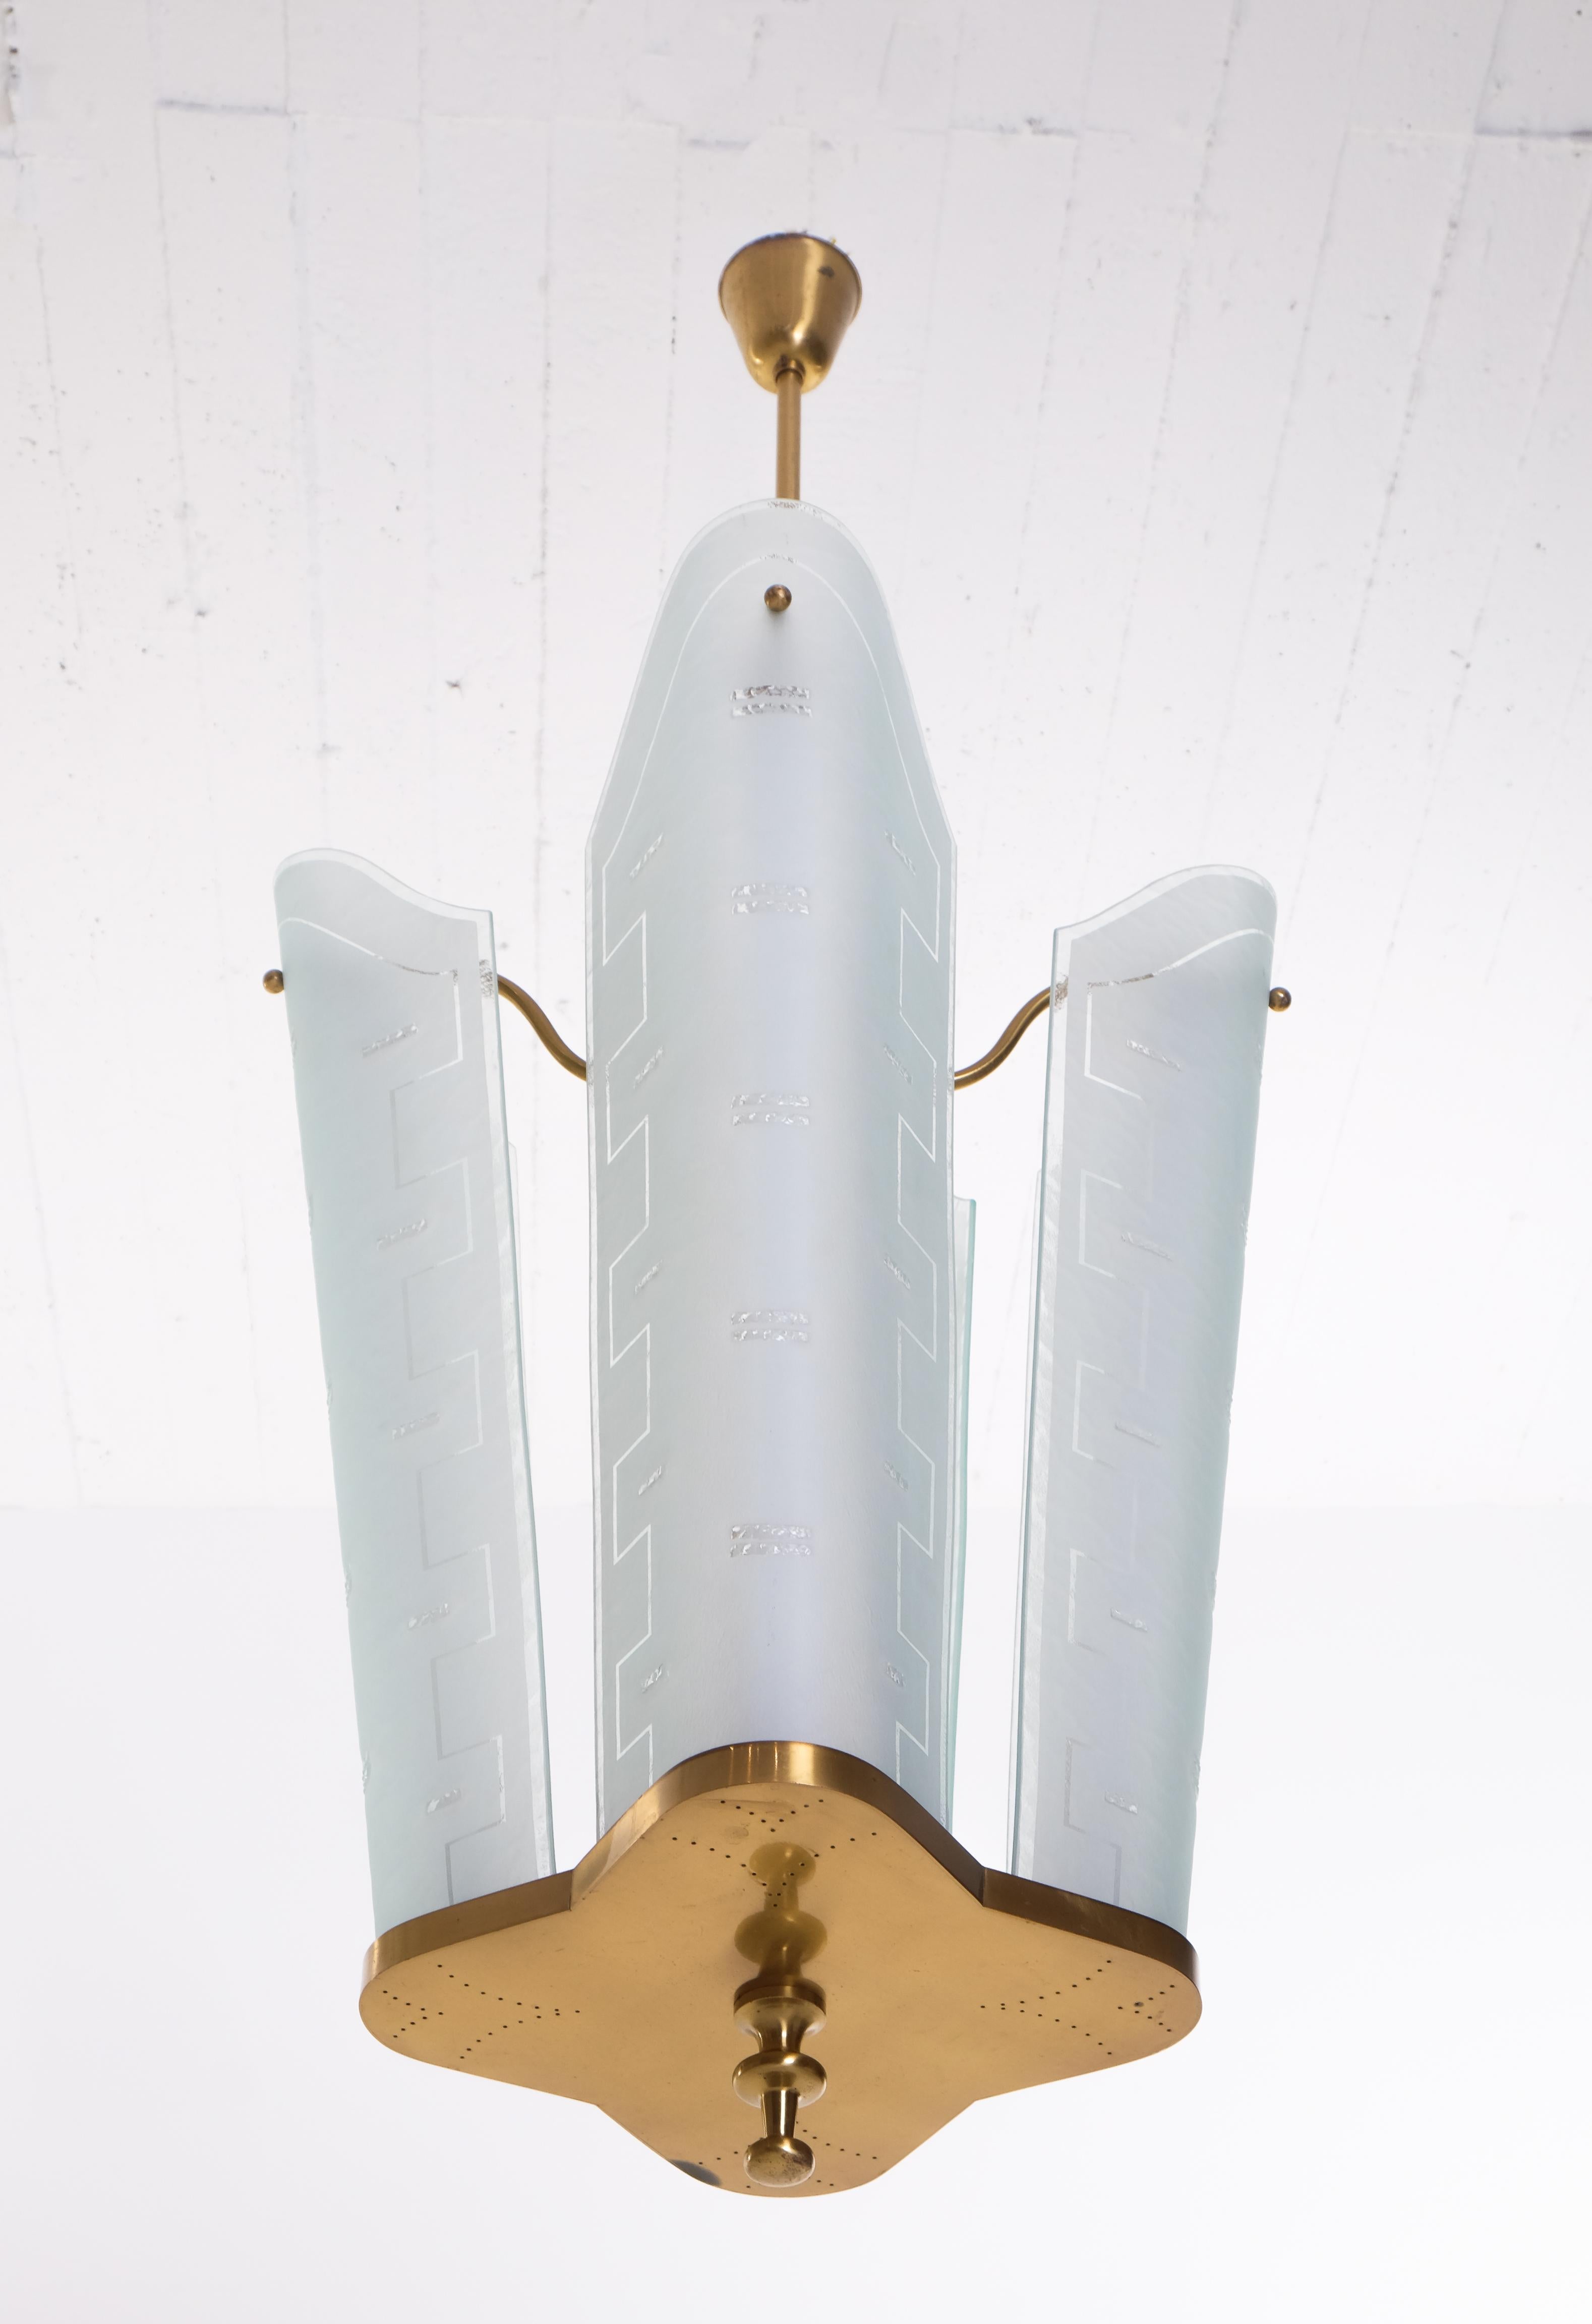 Très rare ensemble de 2 plafonniers Bo Notini produits par Glössner AB, Suède, années 1950. 
Remarque : le prix indiqué est celui d'une personne seule. Laiton perforé et abat-jour en verre gravé.